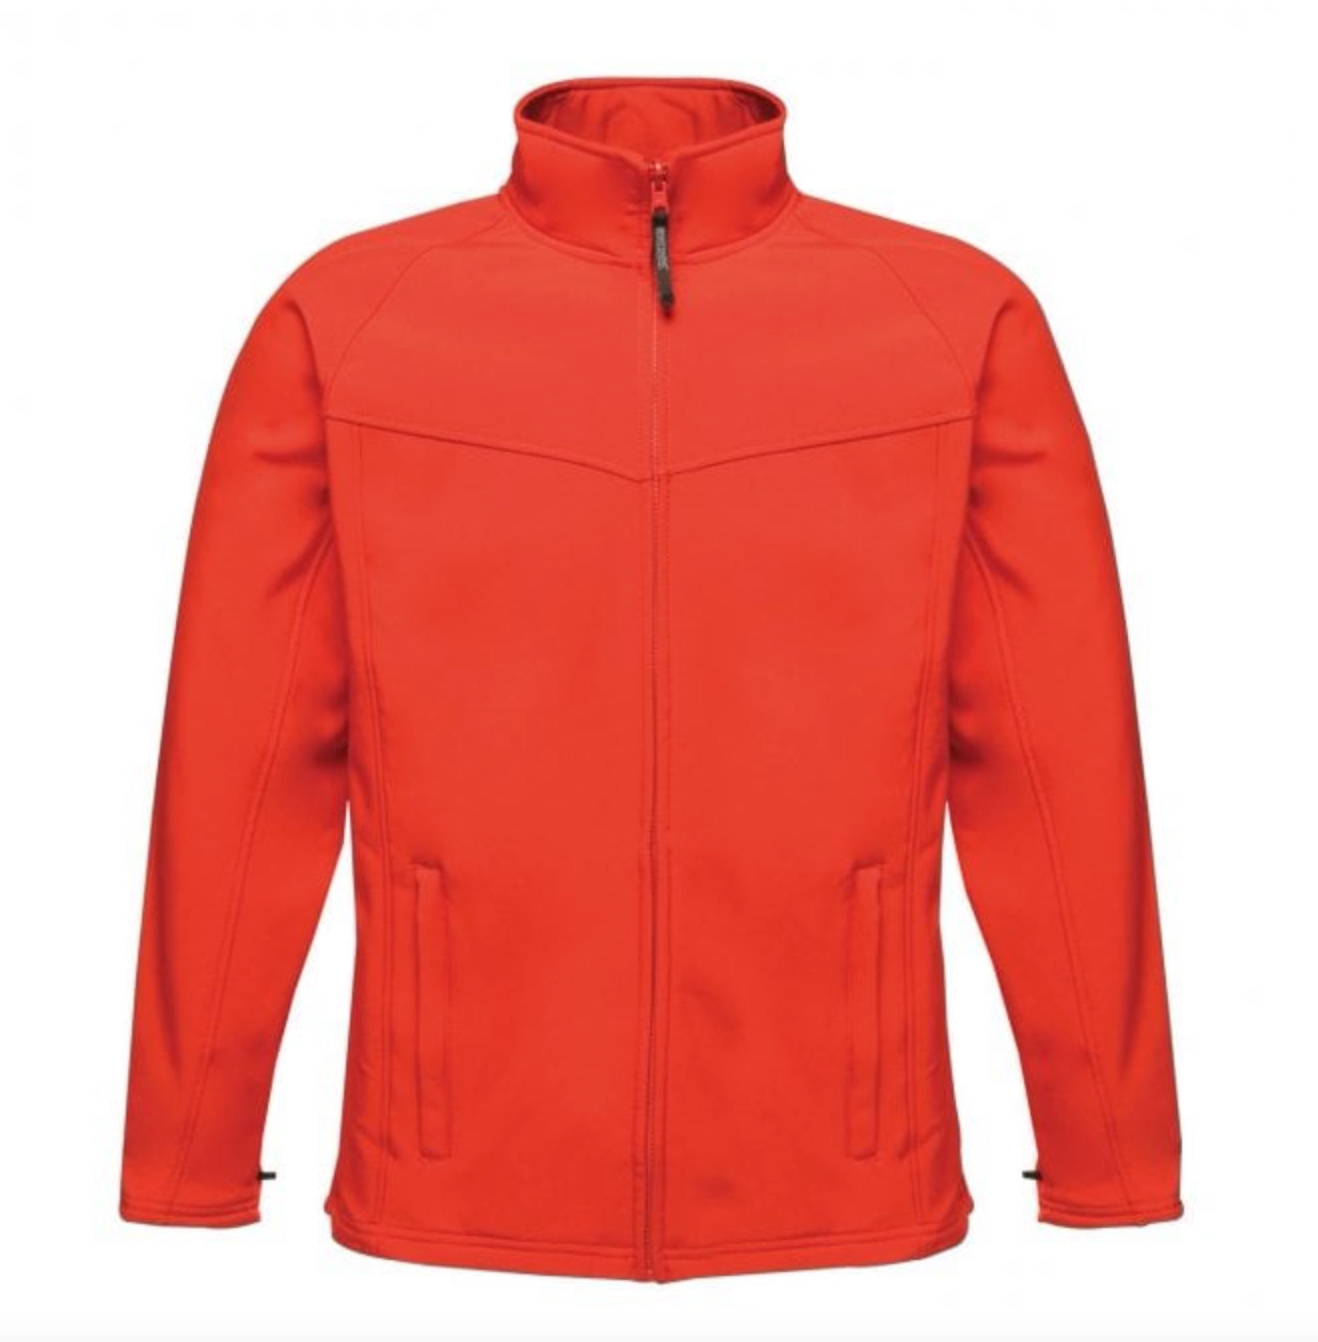 Regatta Team Softshell Jacket - Mens L red